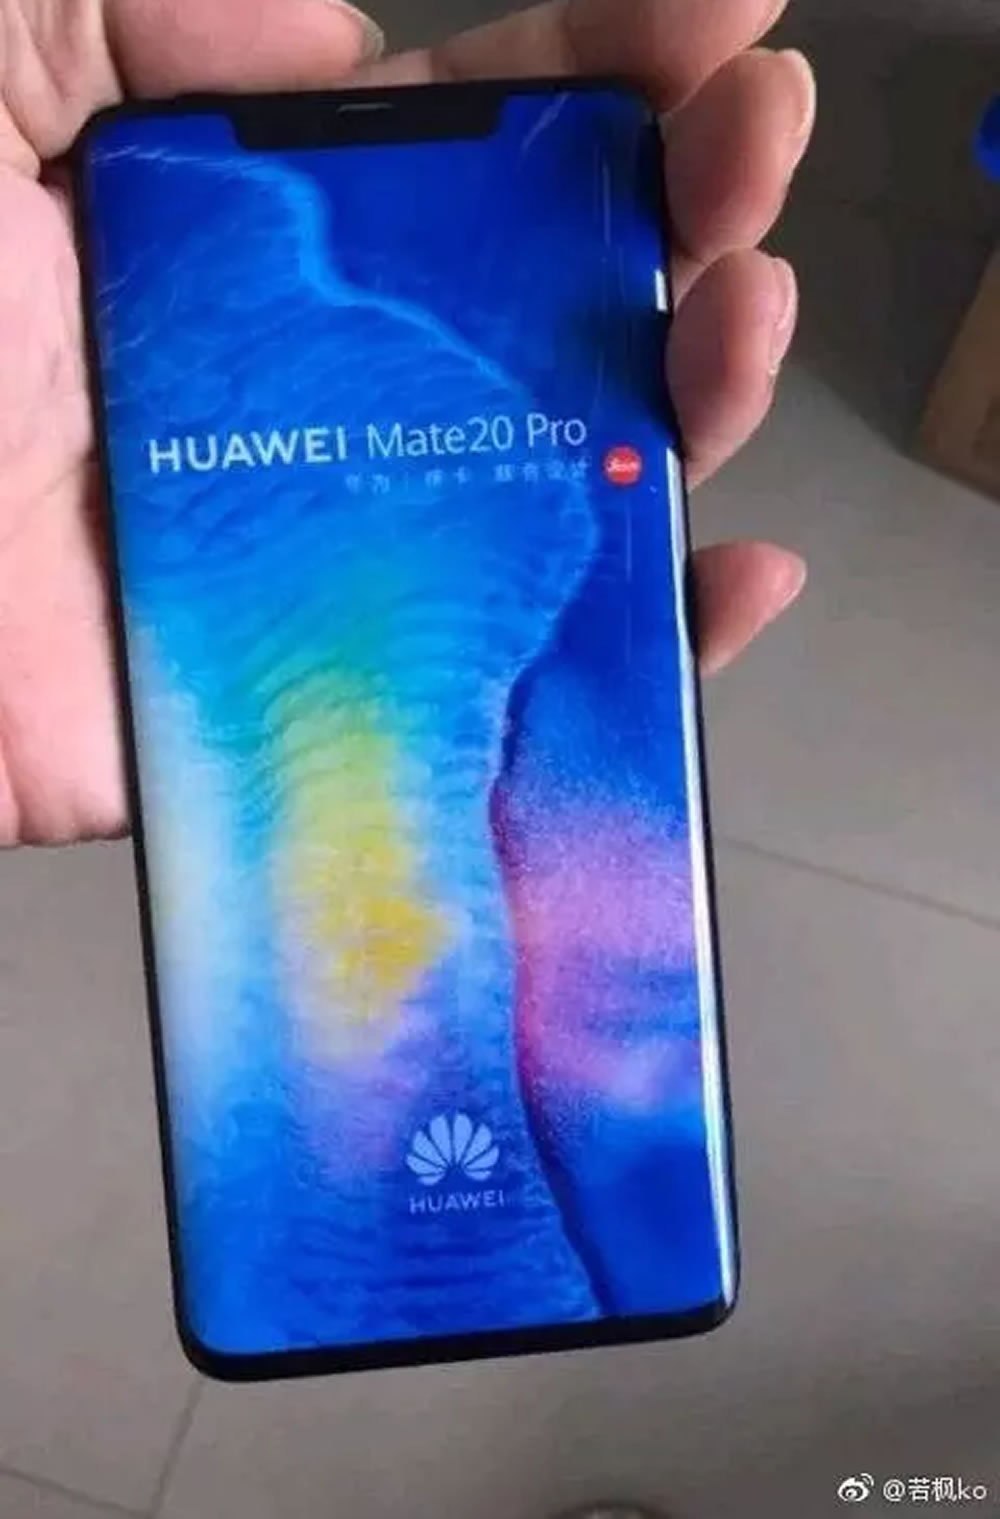 Huawei Mate P20 Pro ser lo mejor del 2018?